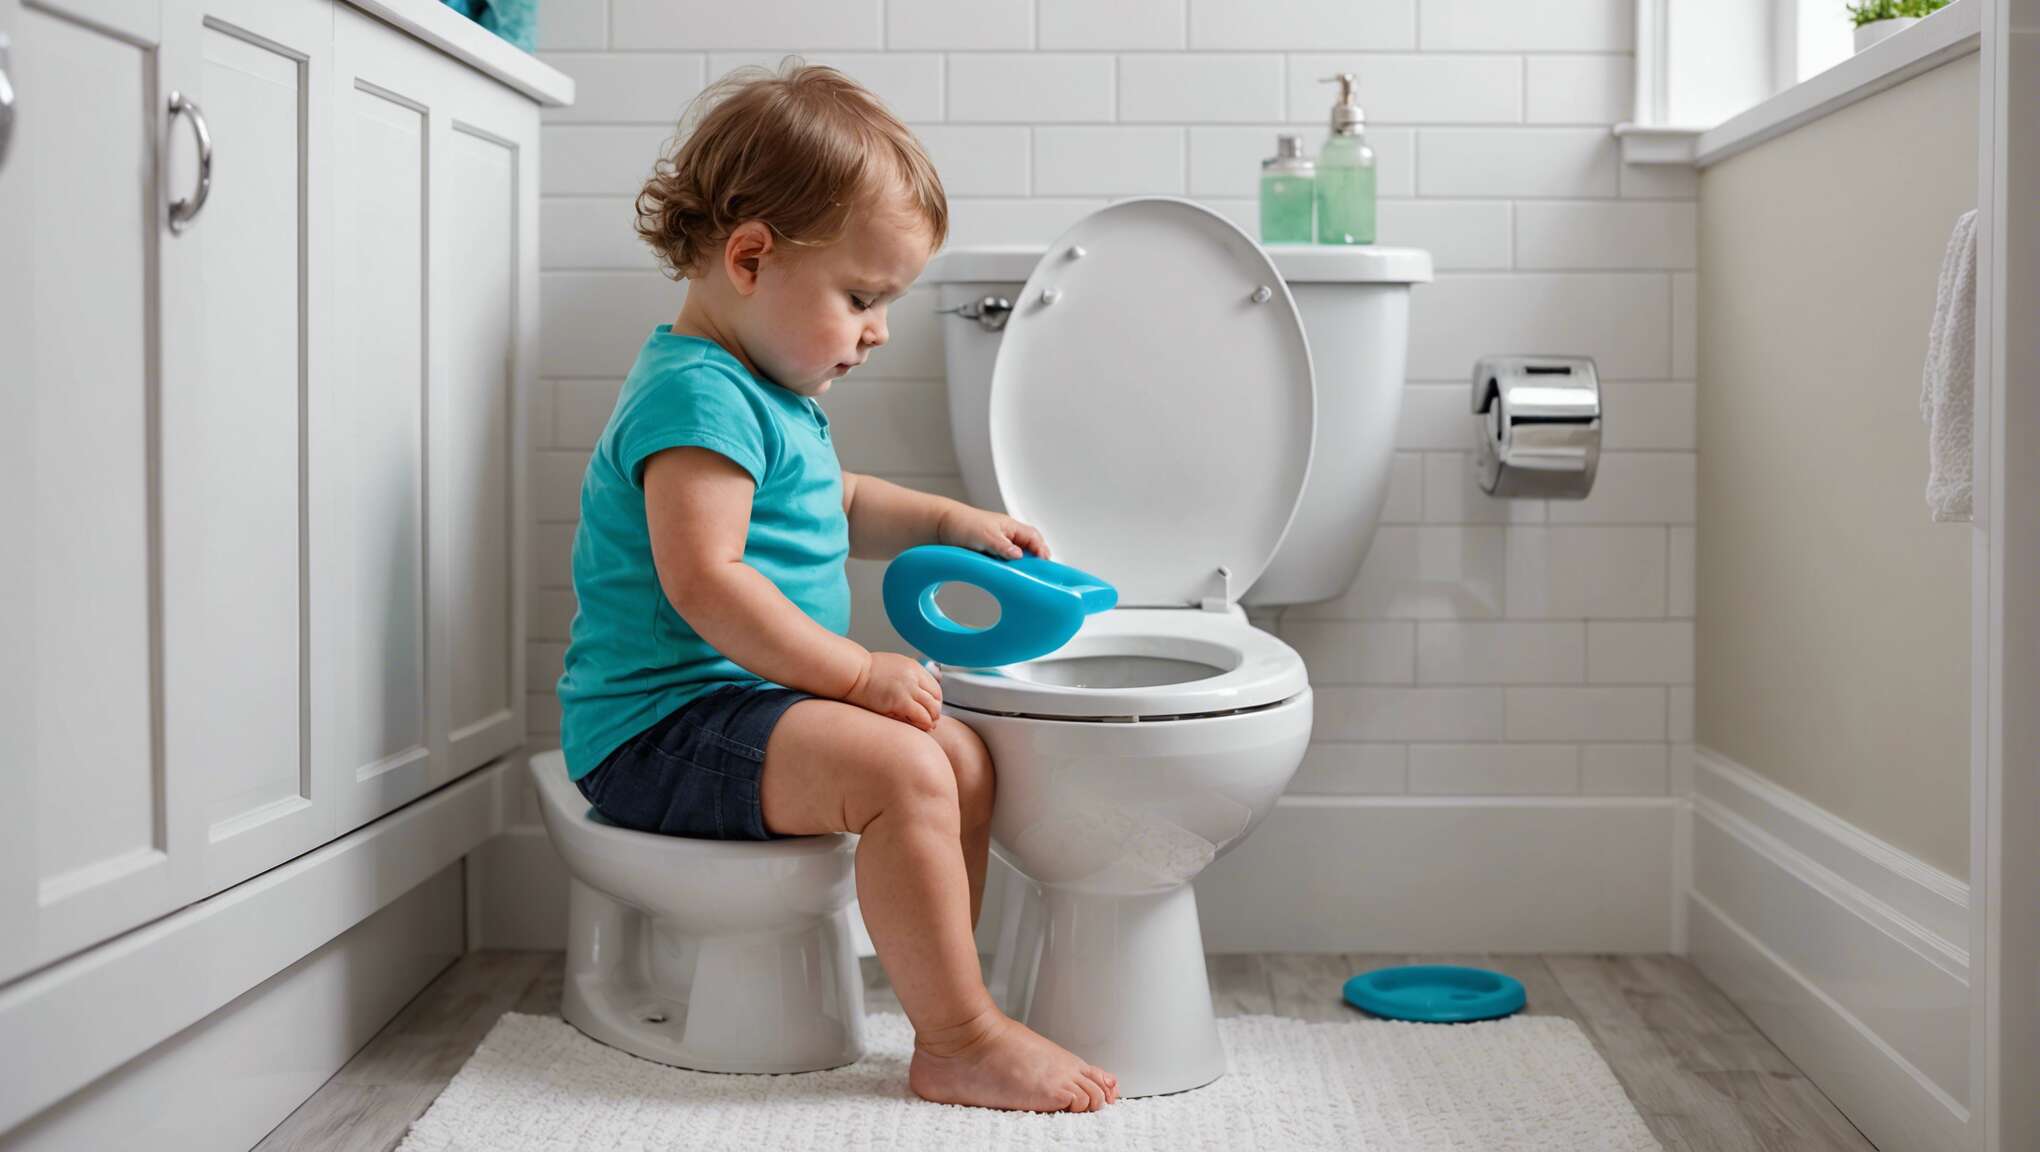 L'importance de bien choisir un réducteur de toilette pour votre enfant